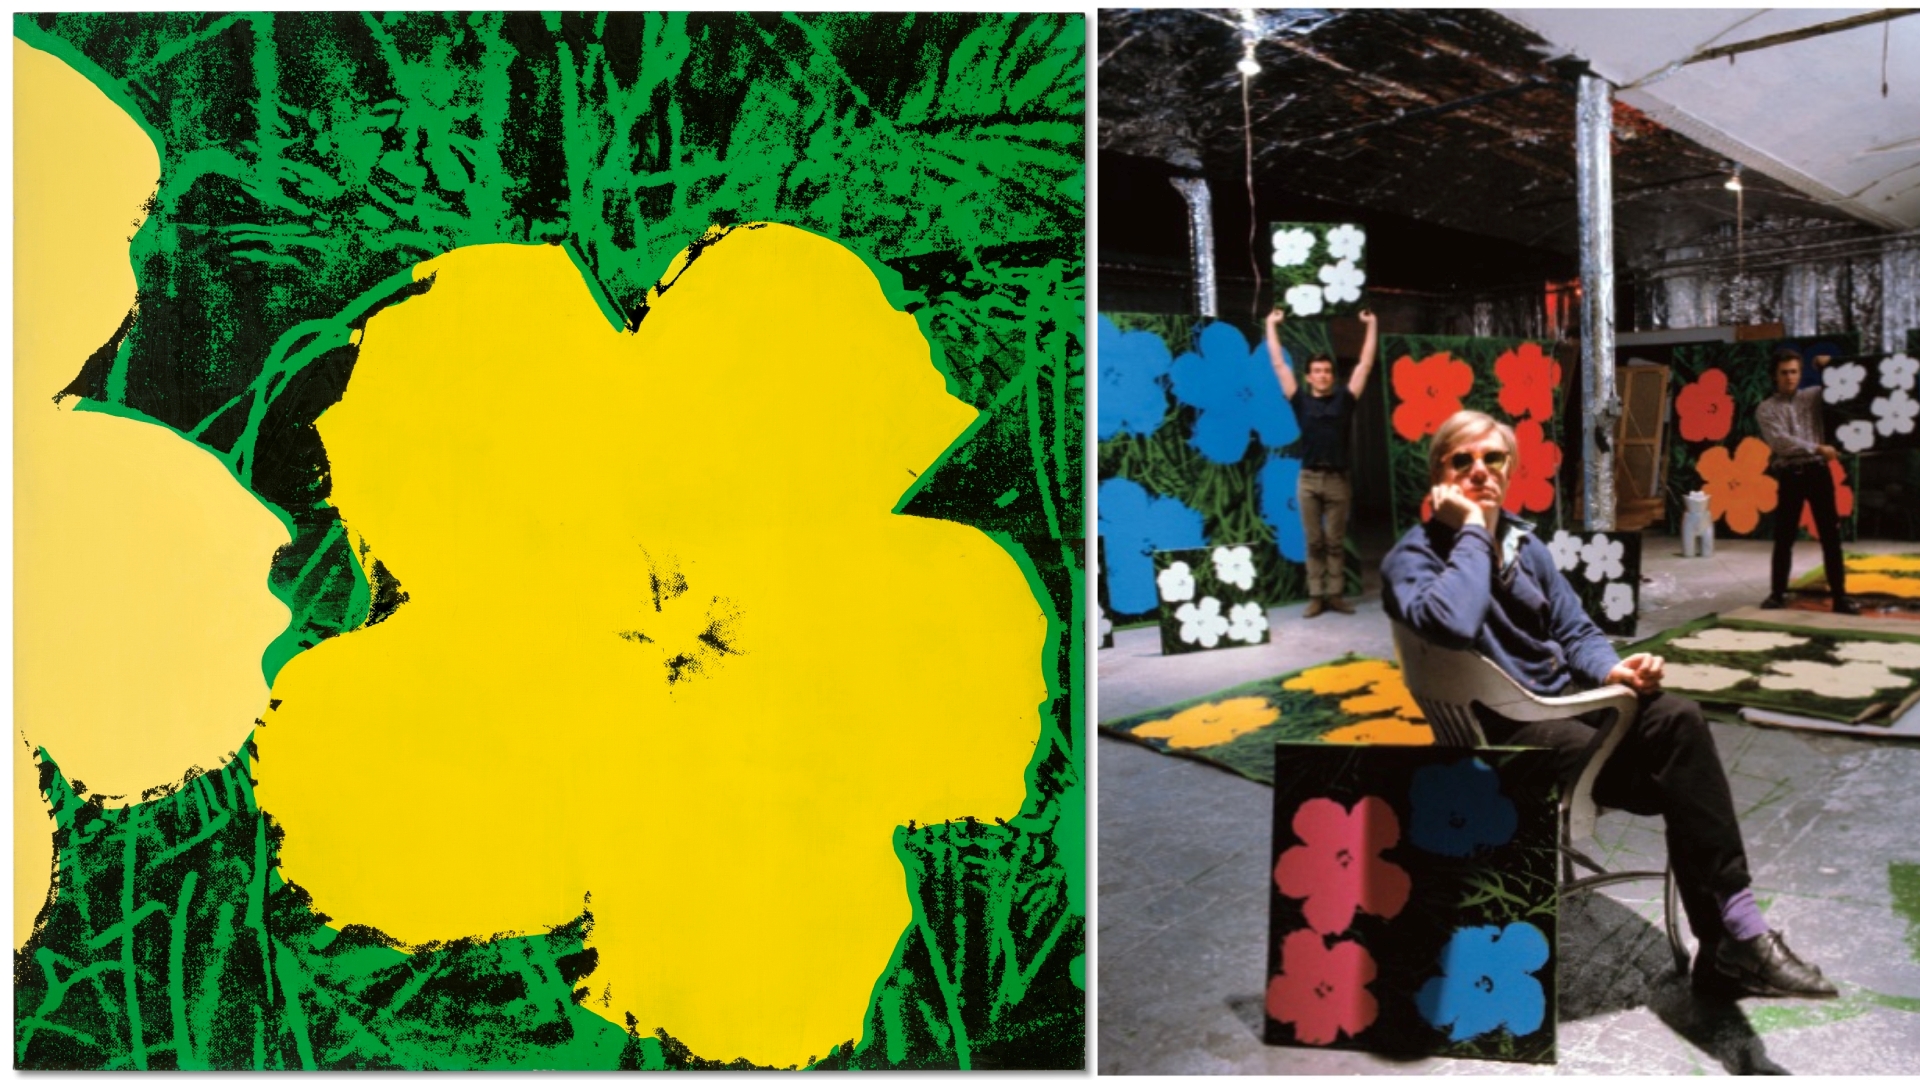 安迪沃荷珍罕傑作《花》將亮相佳士得拍場 為沃荷藝術生涯巔峰時期之作